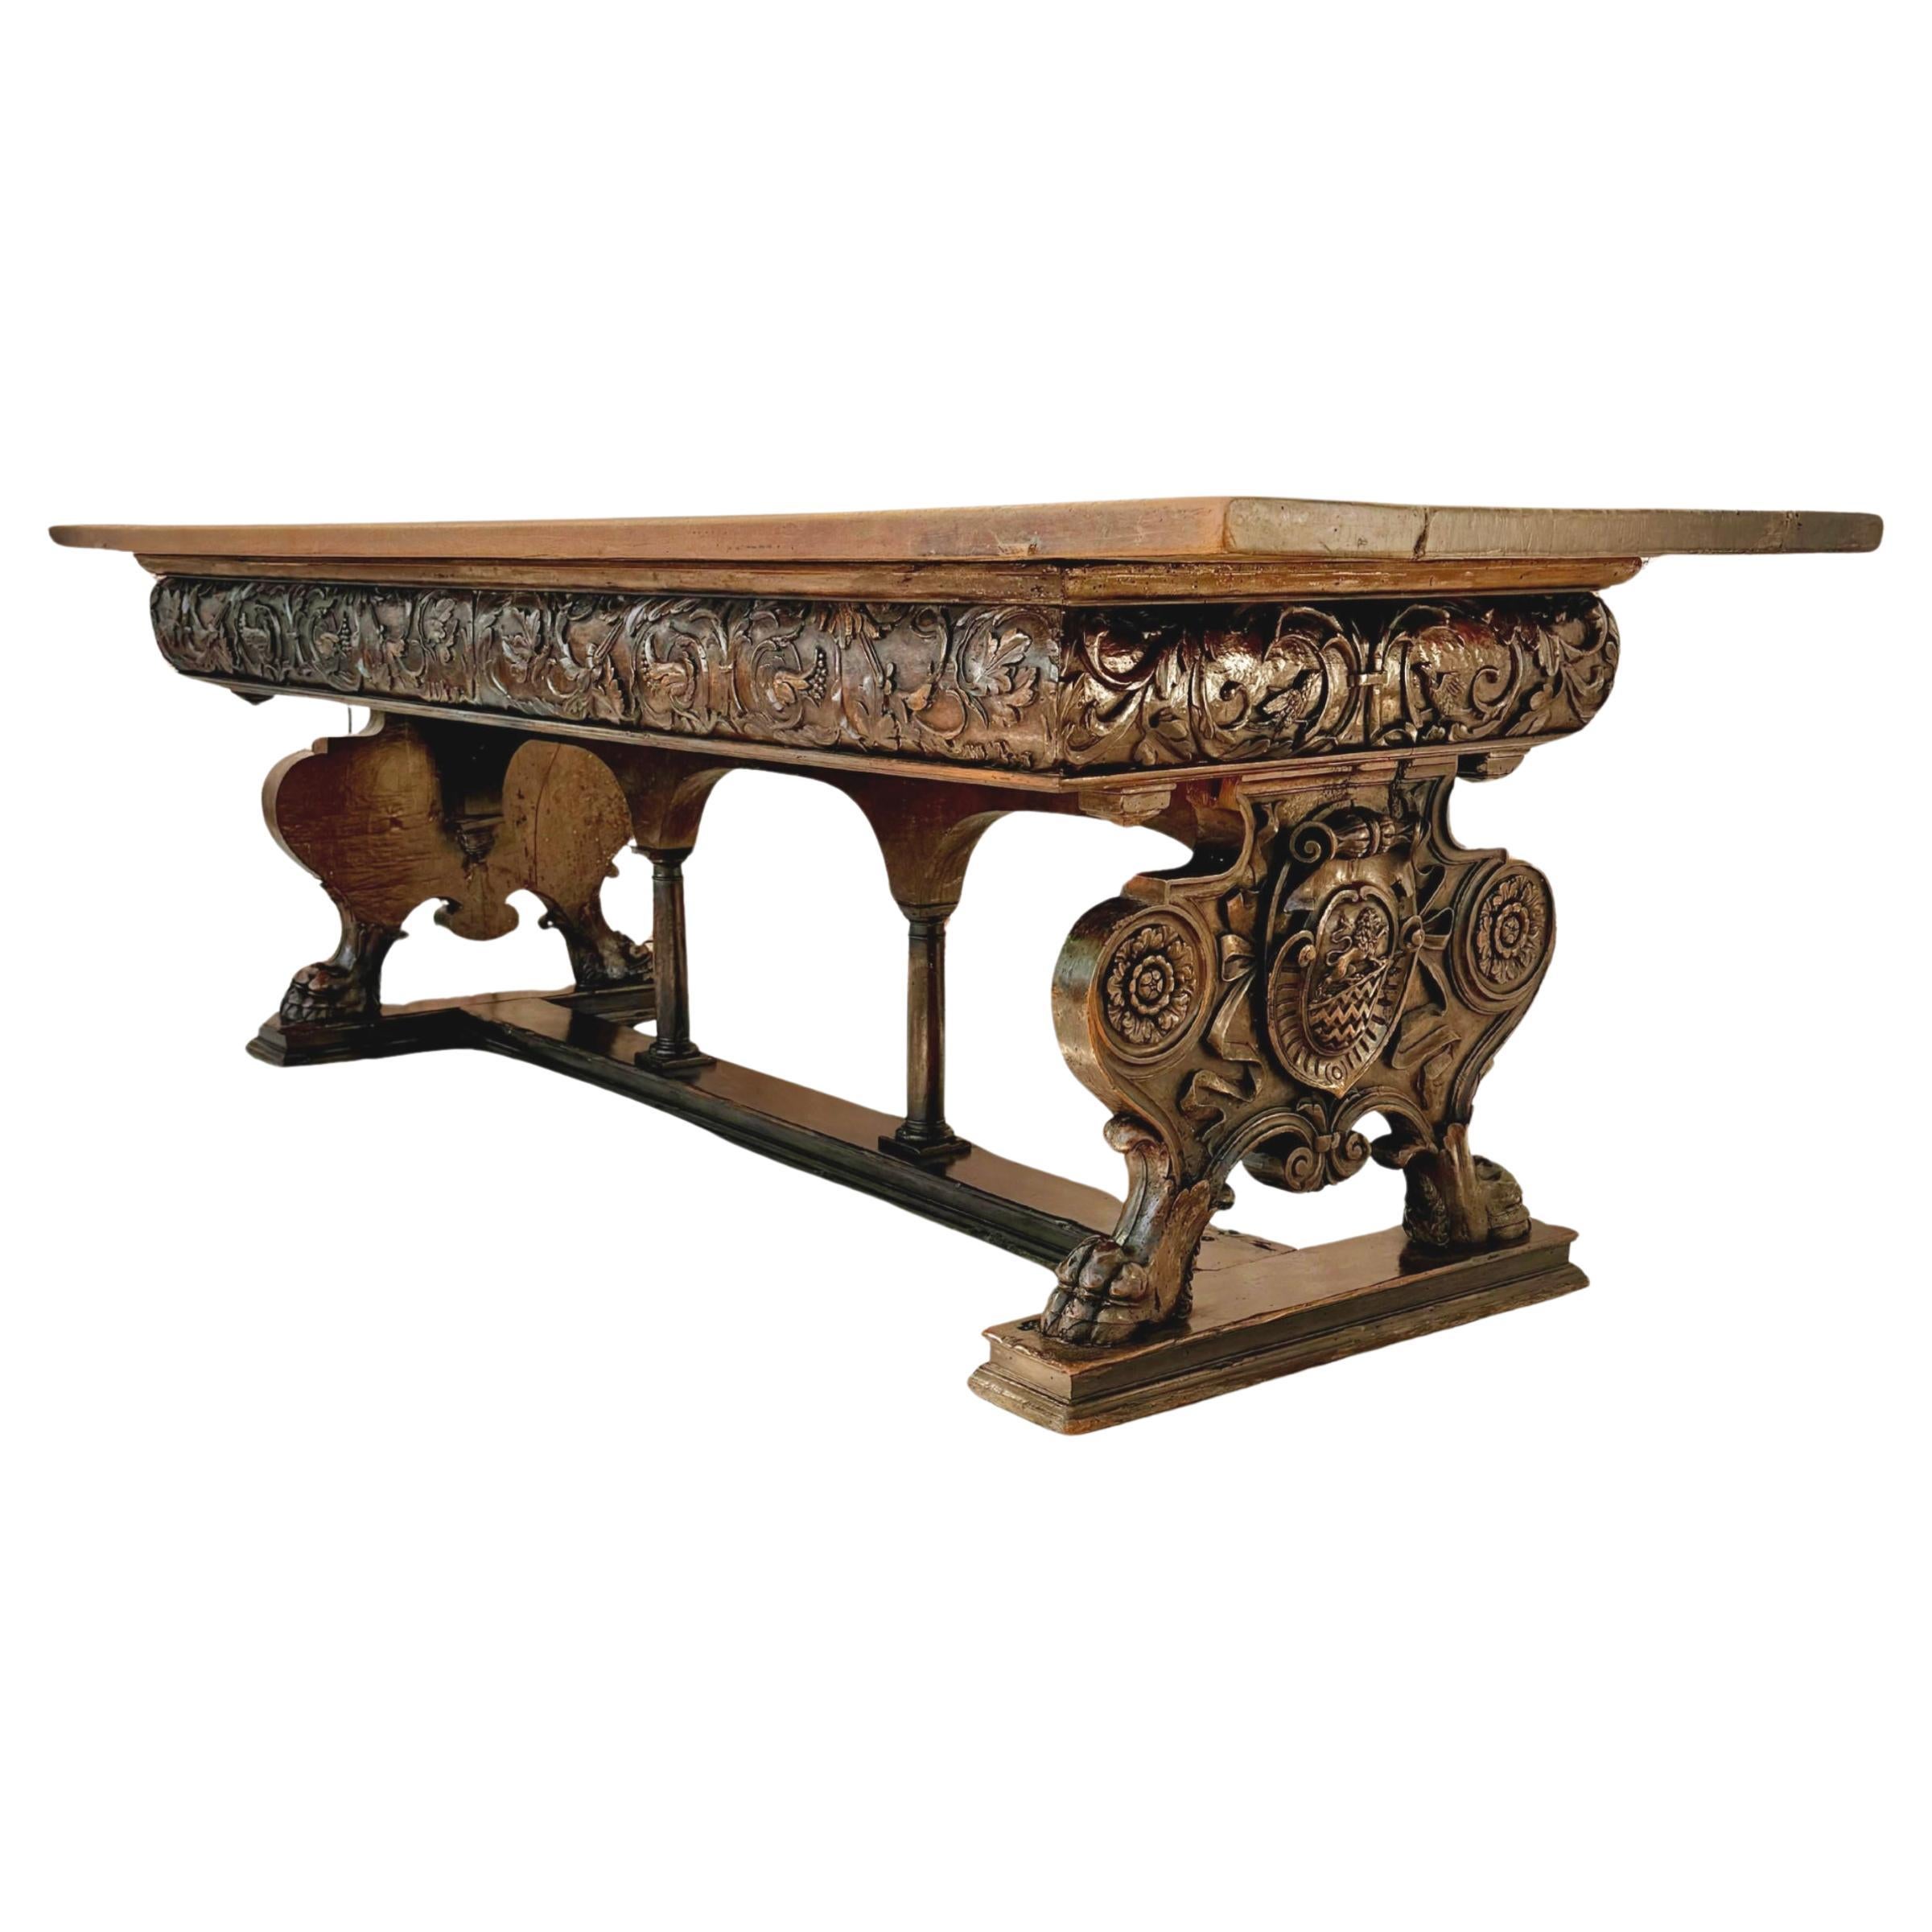 17th Century Italian Renaissance Walnut Trestle Table